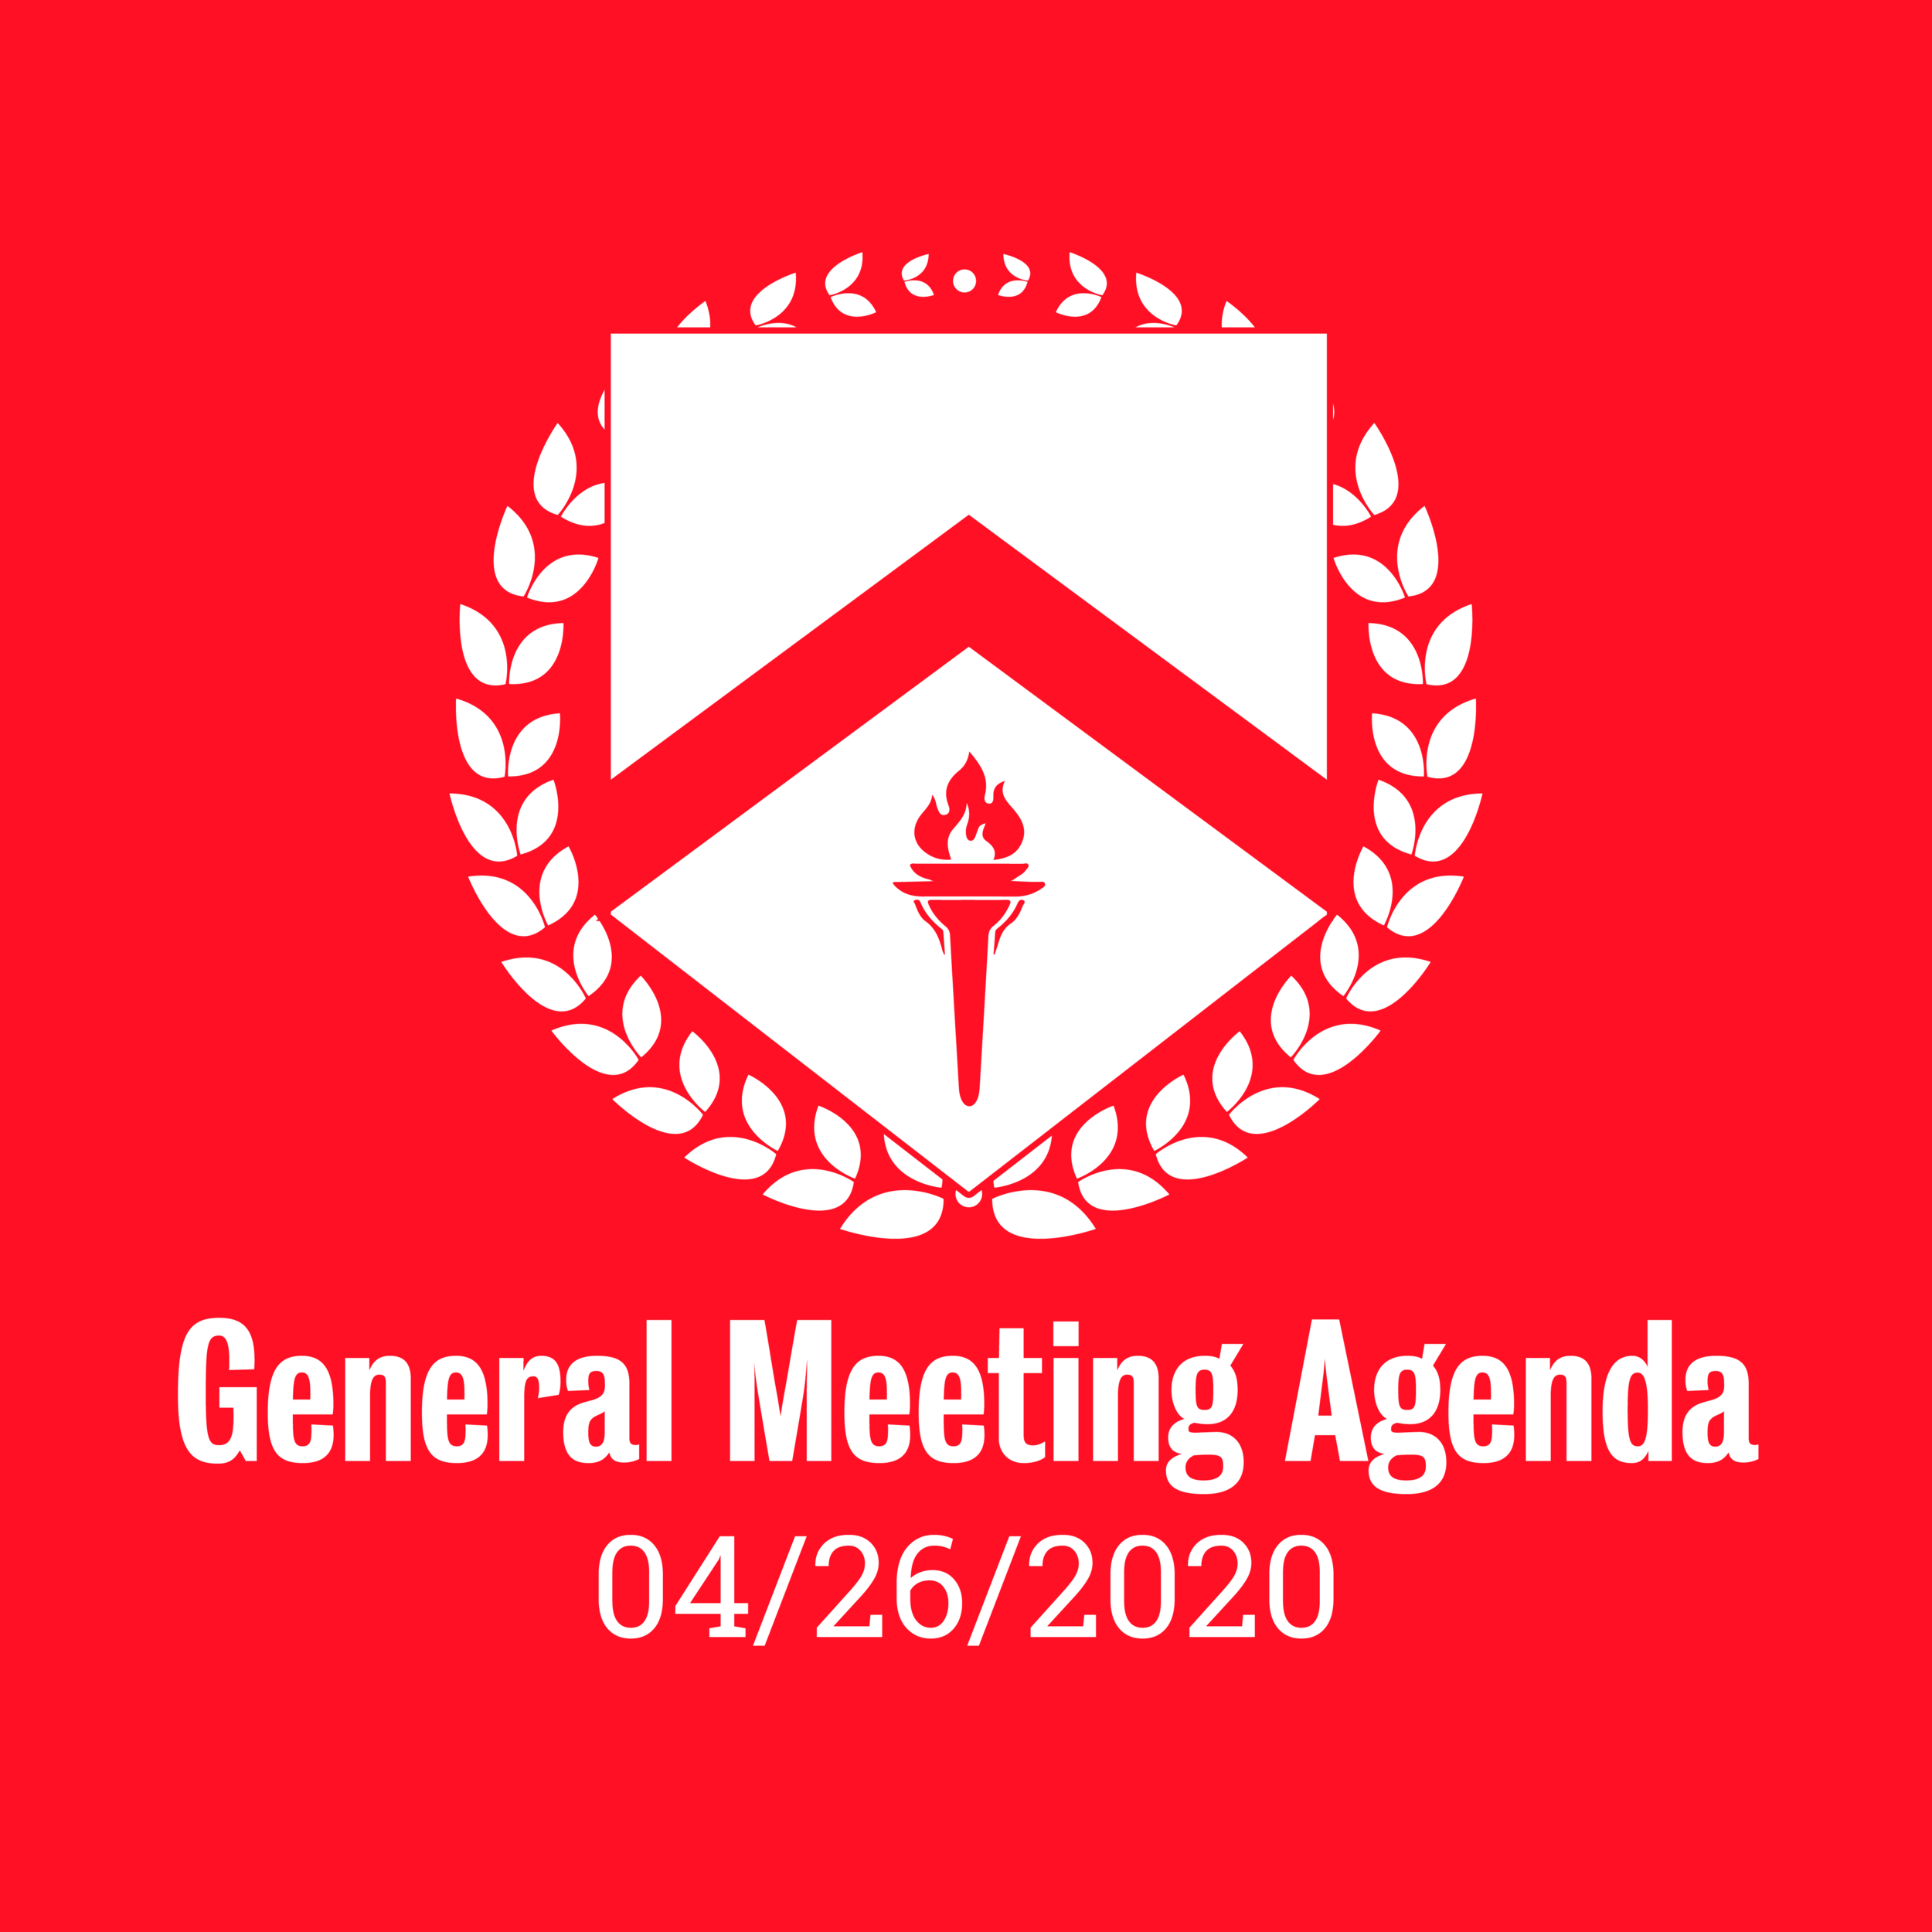 General Meeting Agenda 04/26/2020